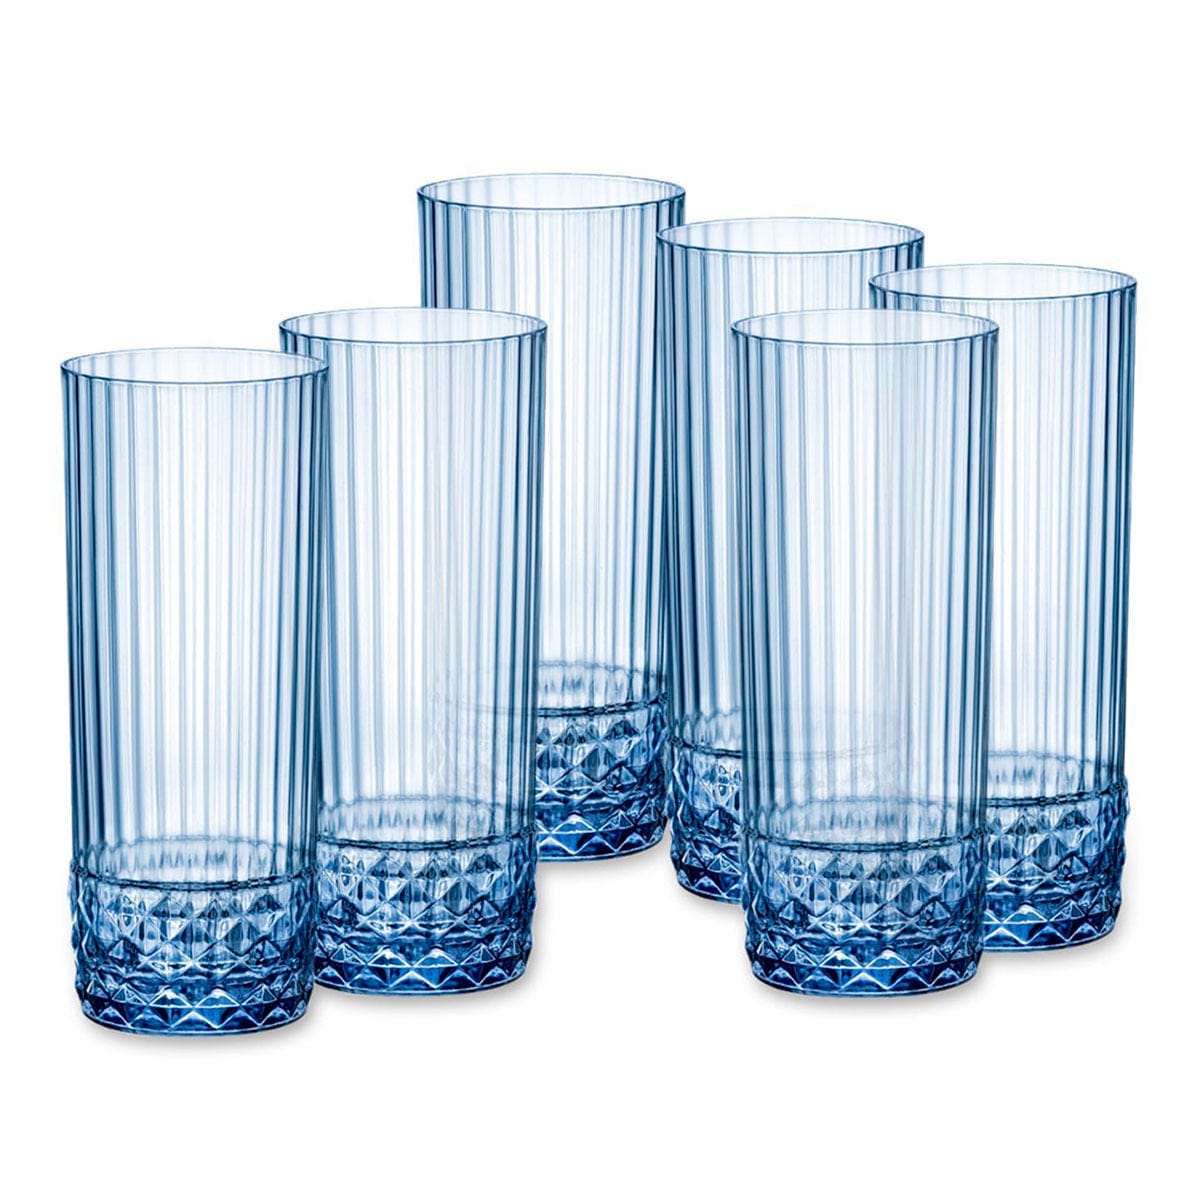 Set de Vasos Bormioli Rocco America'20s Azul 6 Unidades Vidrio (400 ml)  8004360094145 S2706185 Bormioli Rocco